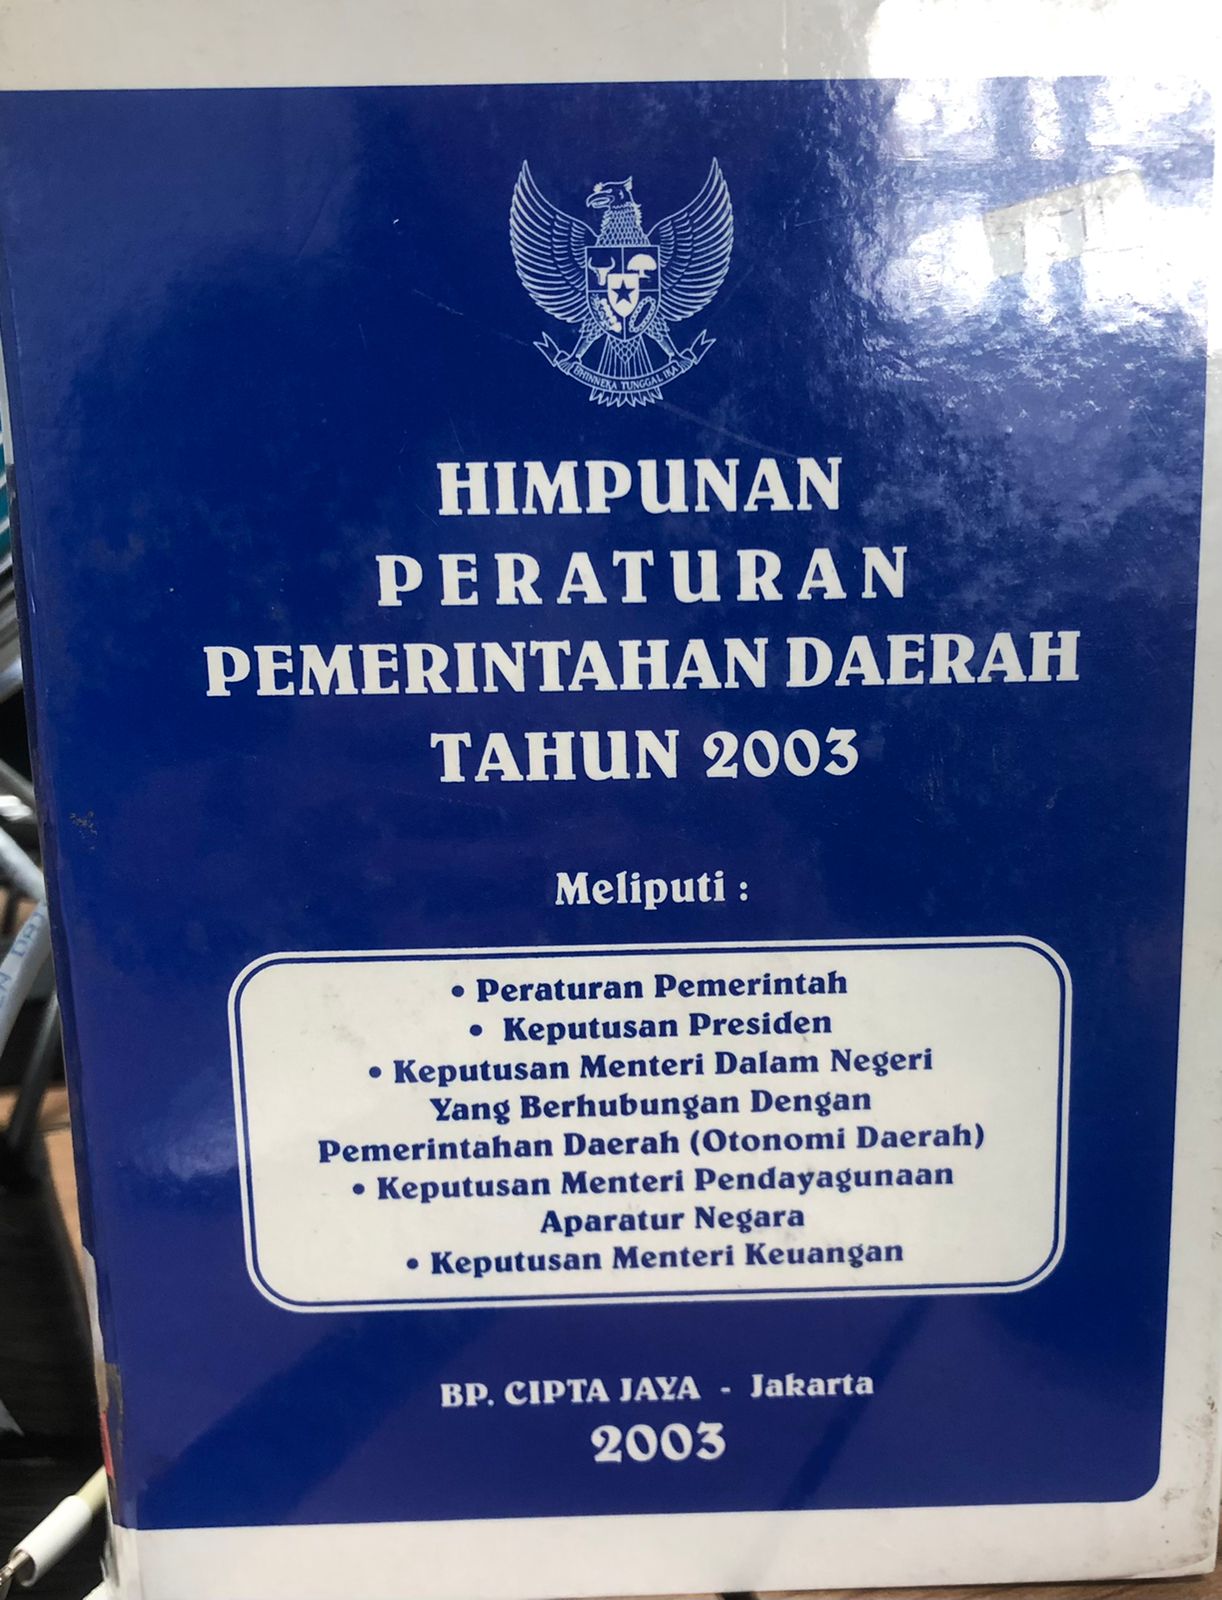 Himpunan peraturan pemerintahan daerah tahun 2003